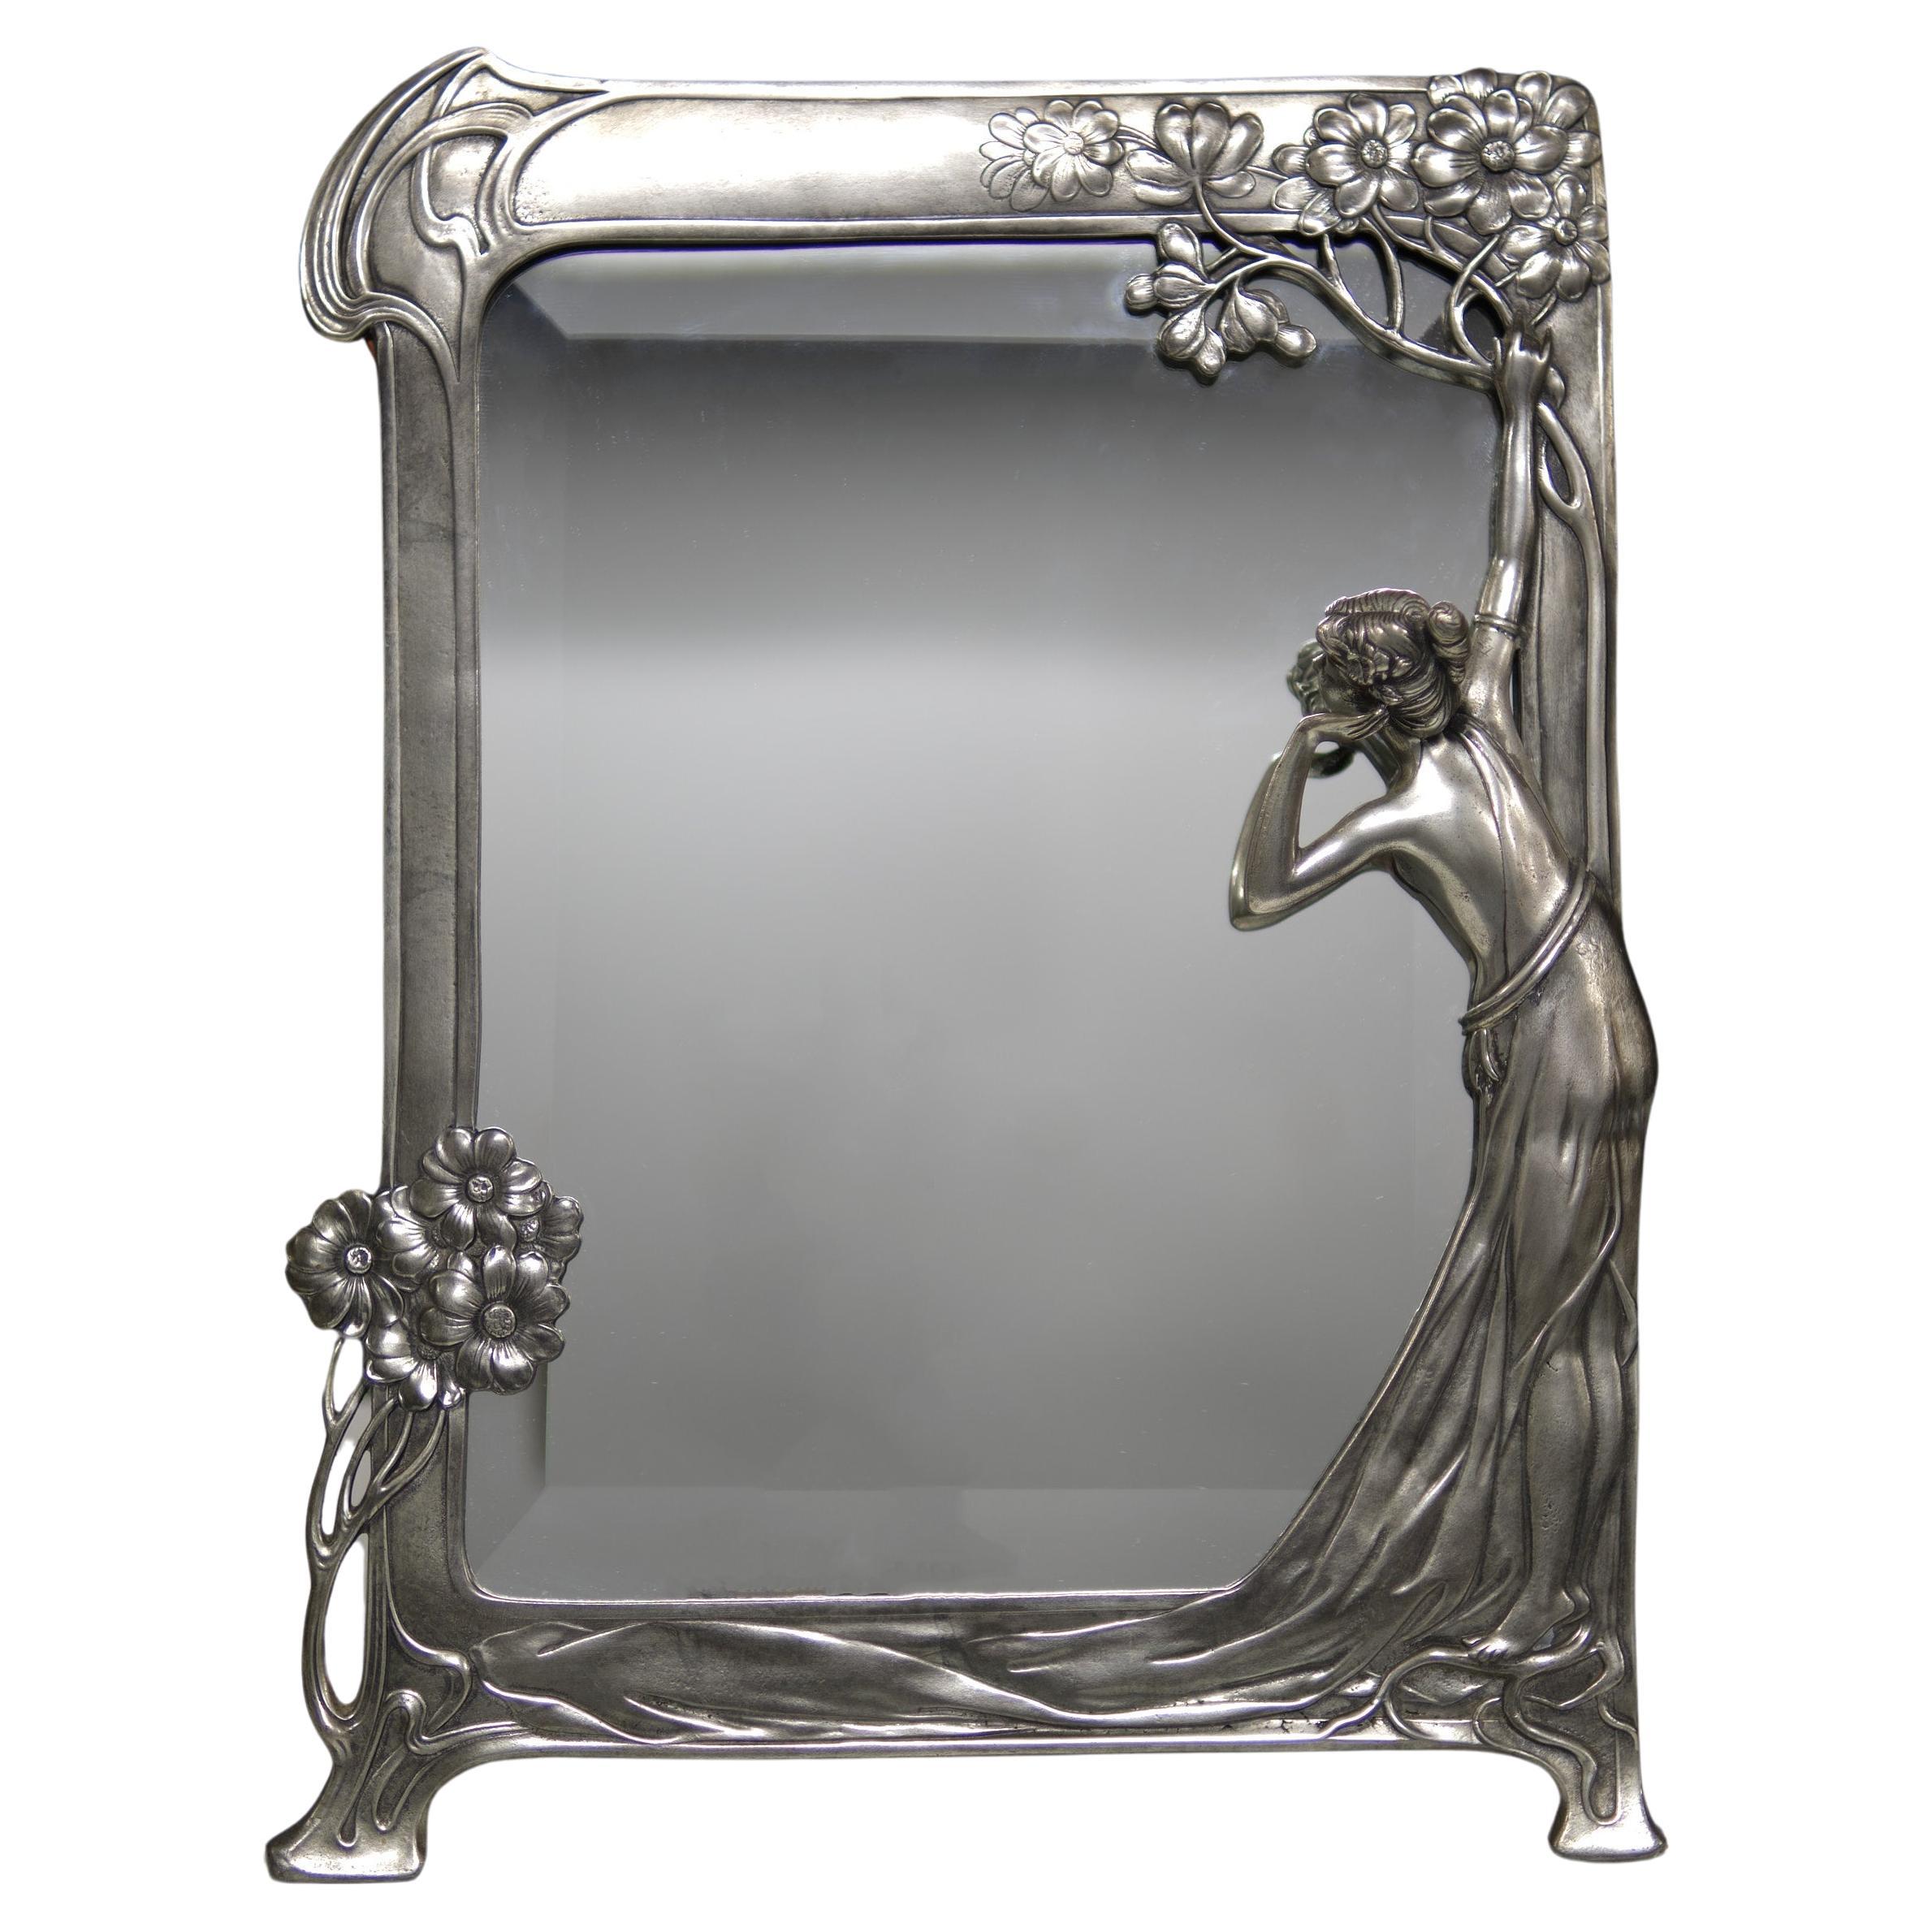 Schön  Jugenstill abgeschrägter Spiegel von der Royal Dutch Pewter Company. Große und stilvolle Frau, die in den Spiegel schaut. Der Spiegel ist insgesamt in sehr gutem Zustand und ein hervorragendes Beispiel.  Circa 1920 .  signiert auf der